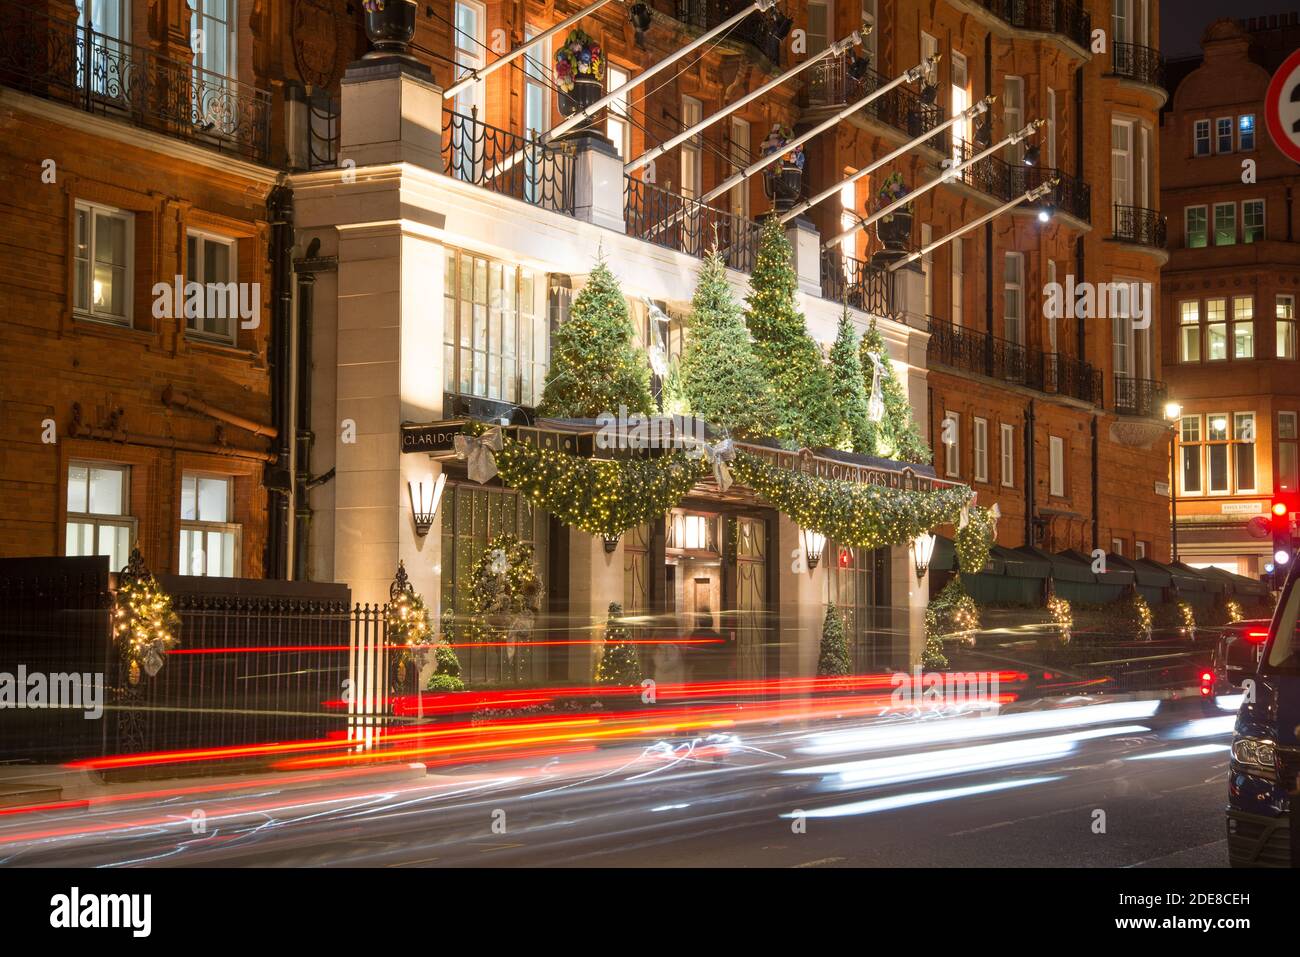 Noël Noël lumières 2020 Affichage entrée avant traditionnel Hôtel cinq étoiles Luxury nuit sombre à Claridge, Brook Street, Mayfair, Londres W1K Banque D'Images